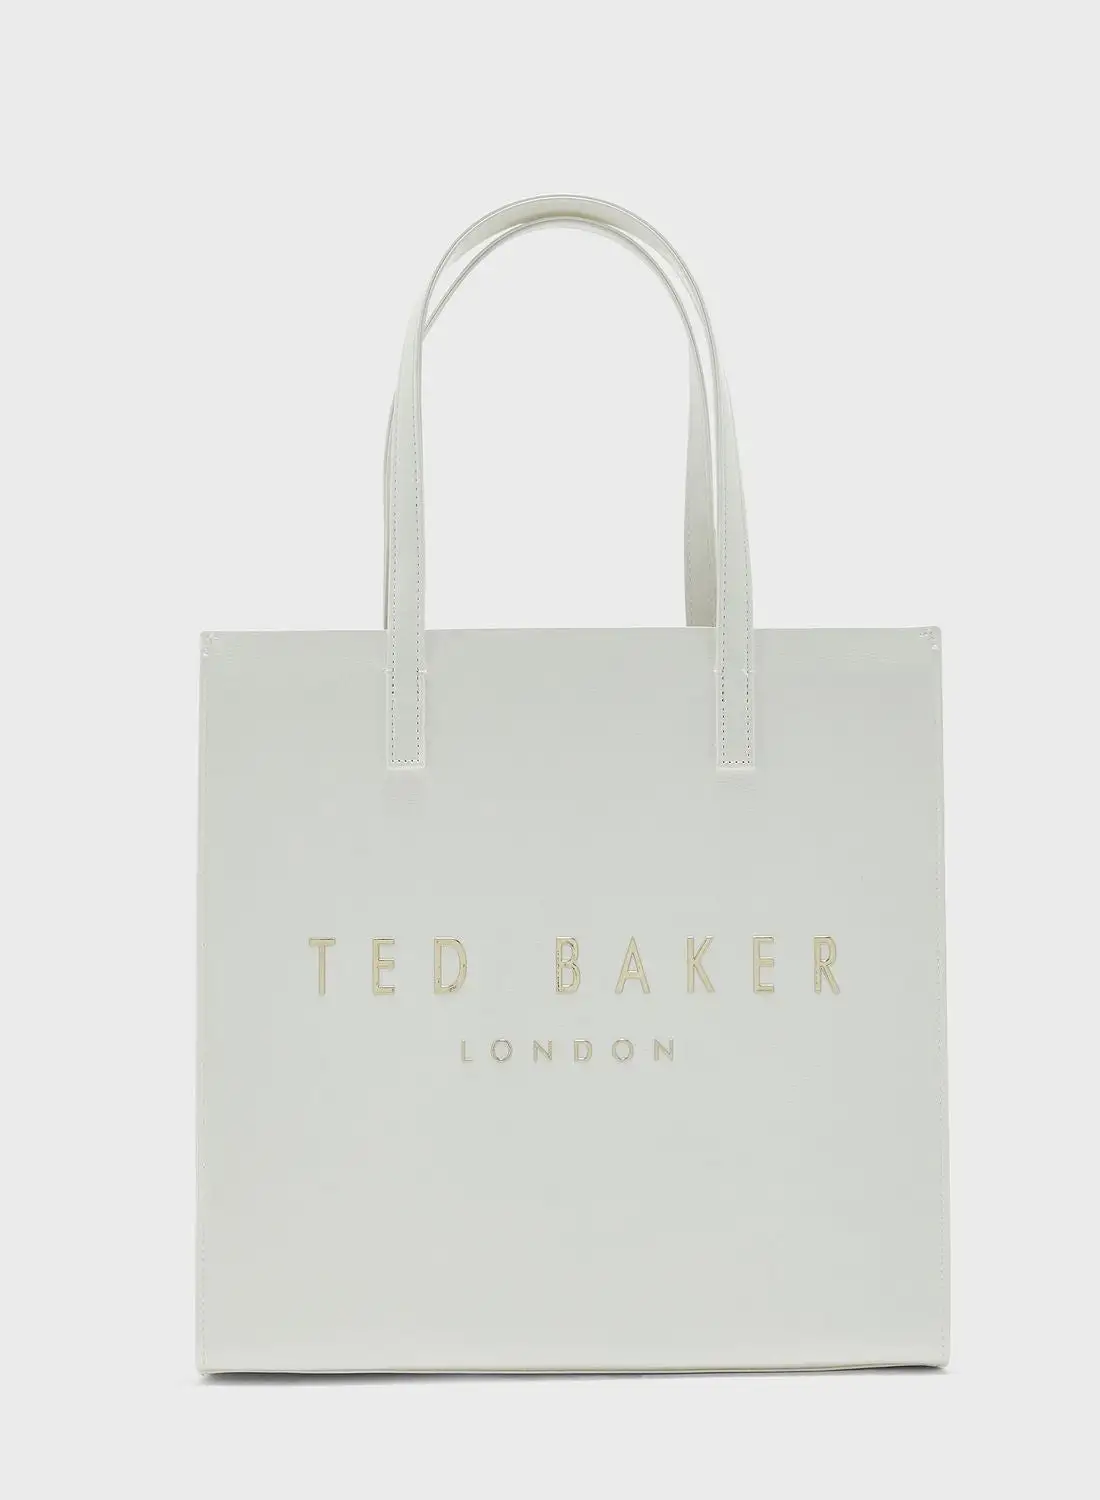 Ted Baker Crinkon Large Shoppers Bag